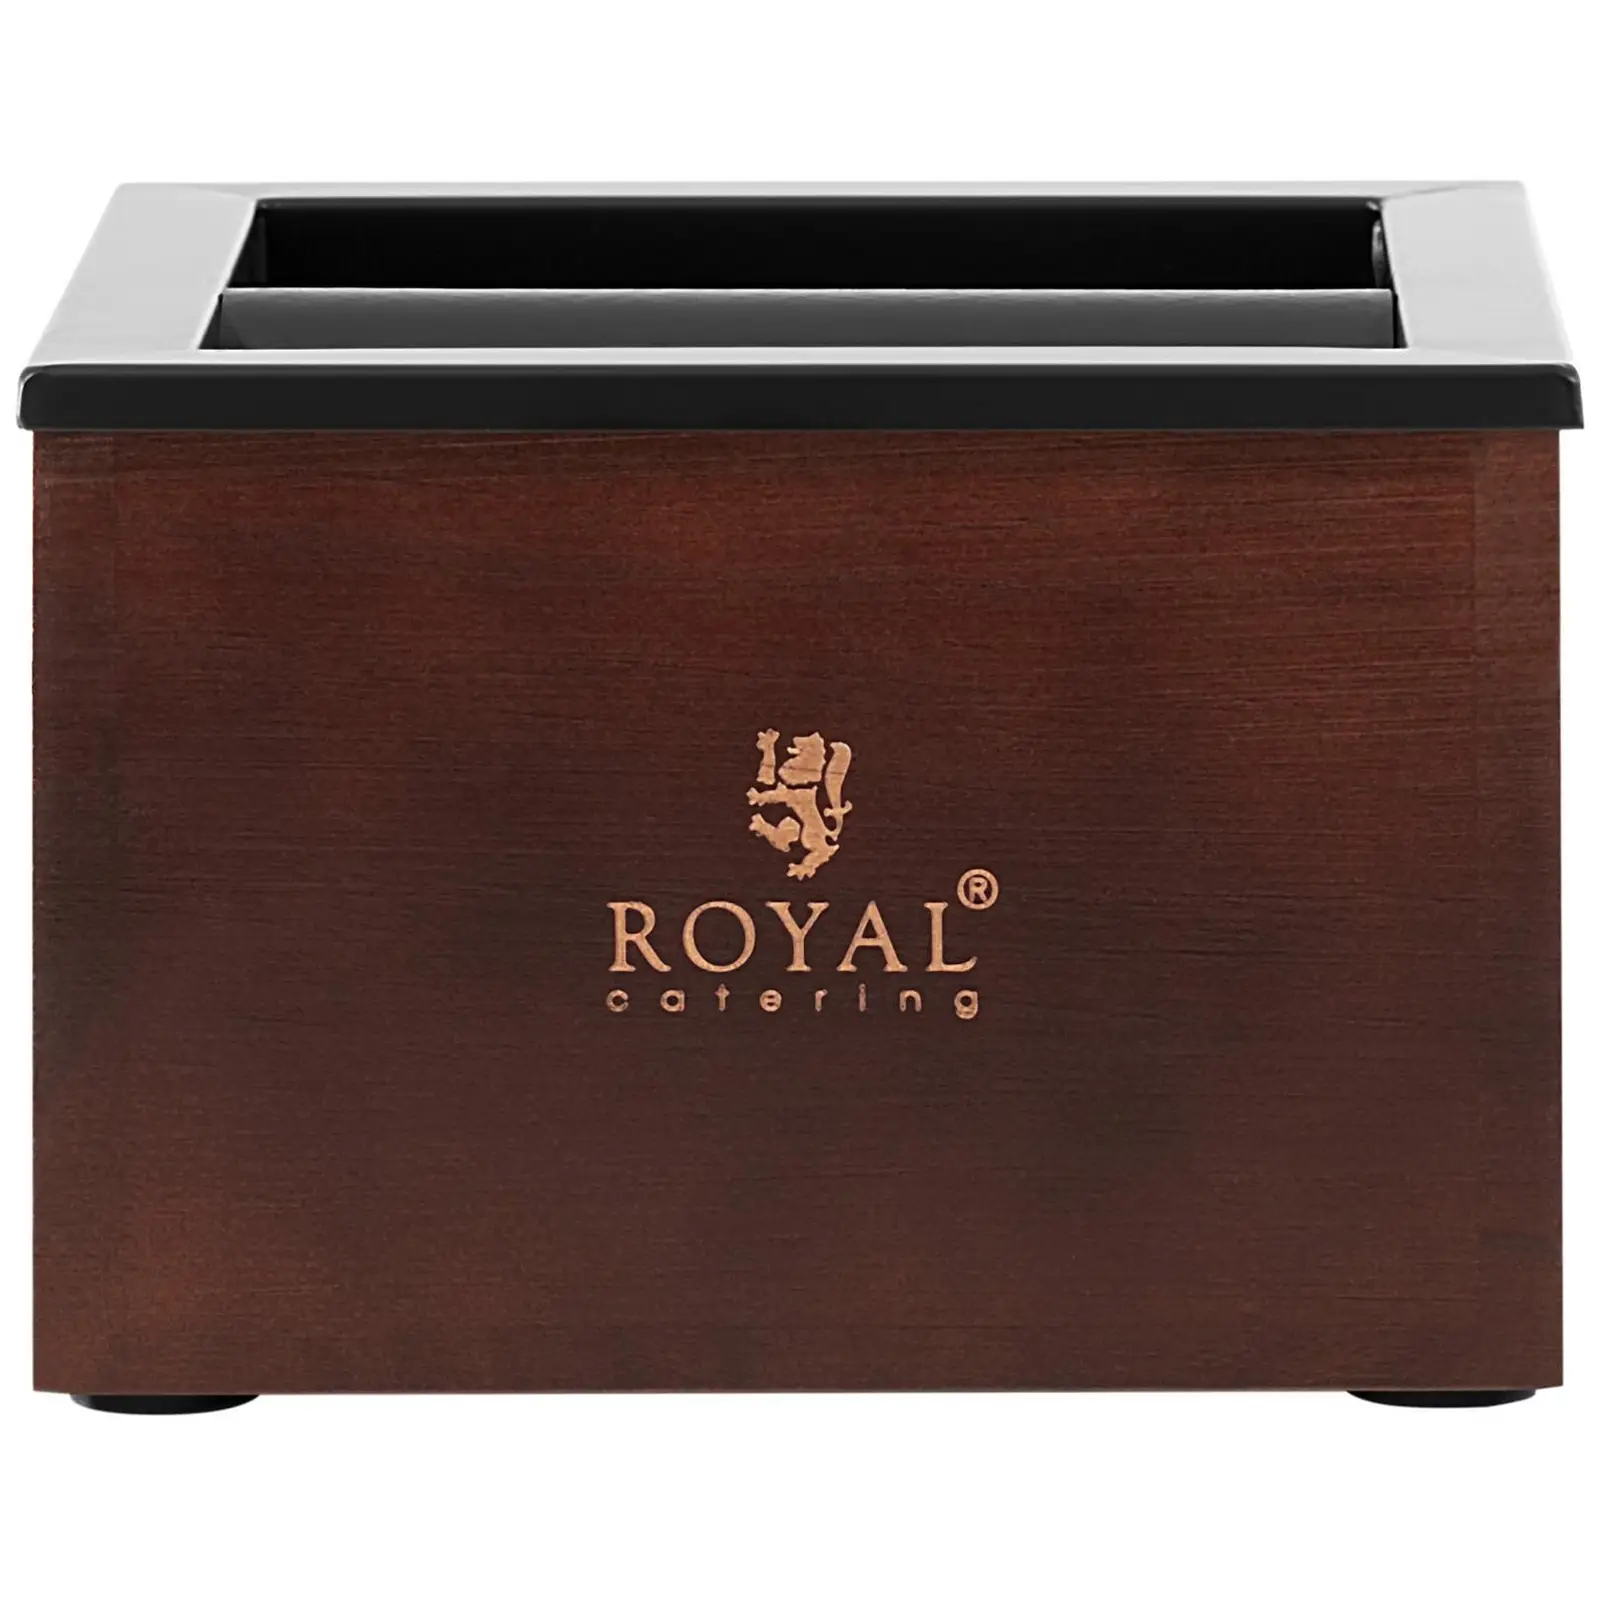 Knockbox - Rostfritt stål/trä - 3,1 L - Med bankstång - Royal Catering